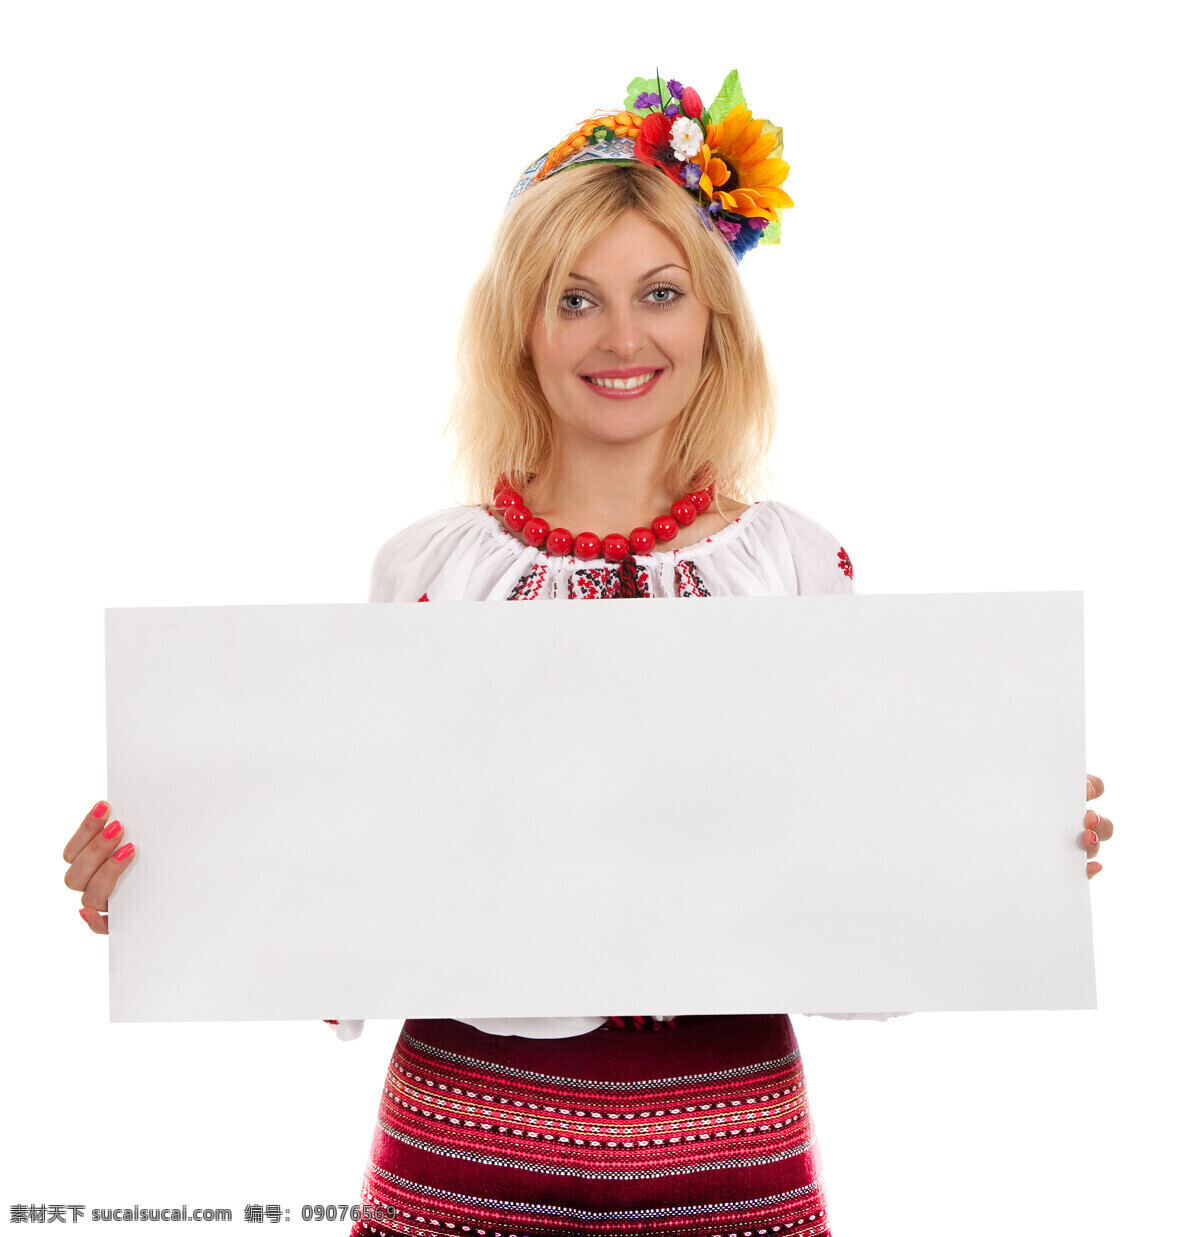 乌克兰 女人 女性 美女 名族服饰 乌克兰女人 金发美女 鲜花 向日葵 头套 空白纸张 美女图片 人物图片